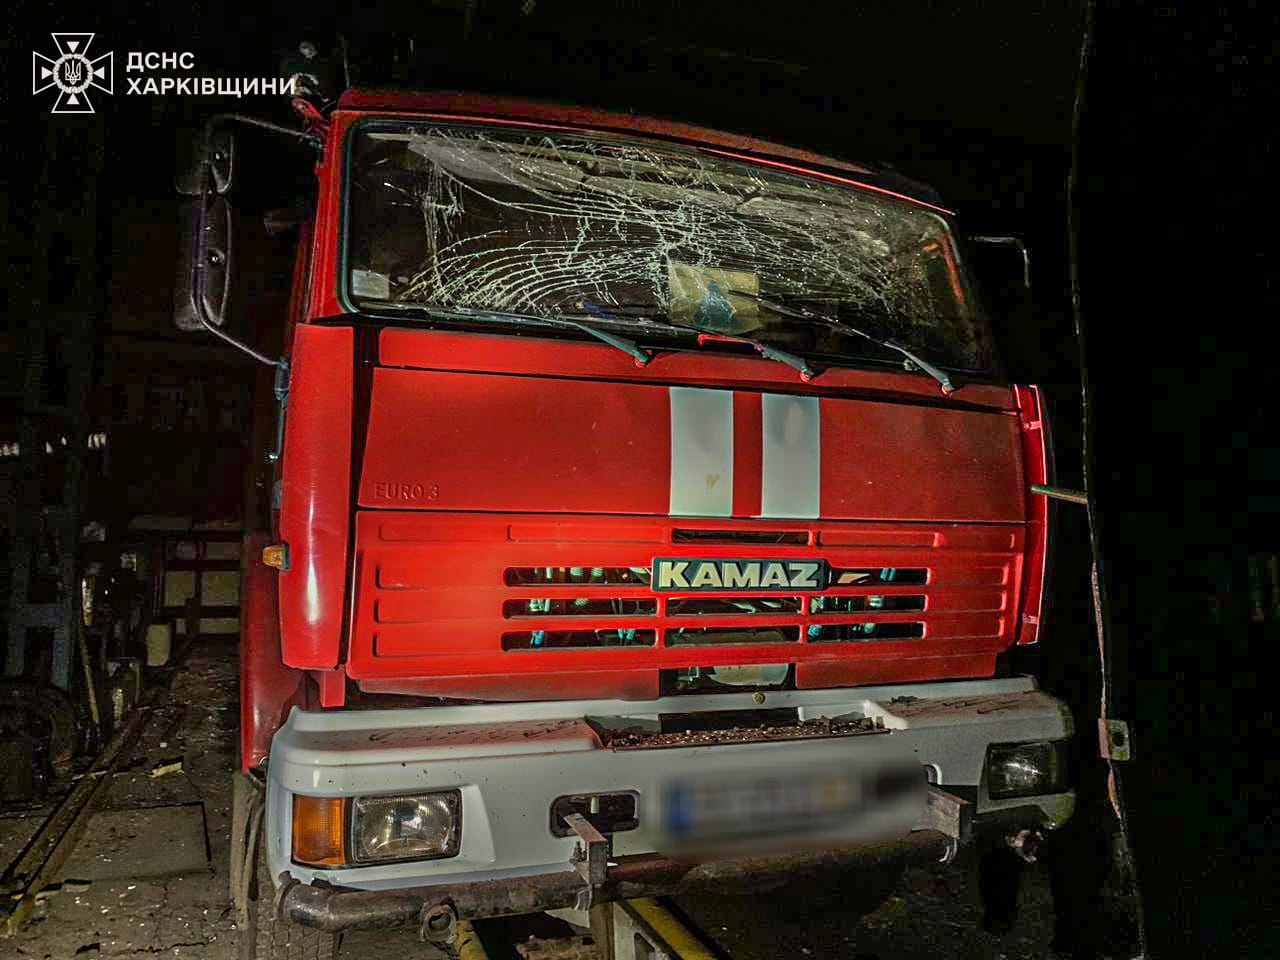 Харківщина: ворог завдав цинічного ракетного удару по пожежній частині, постраждав рятувальник